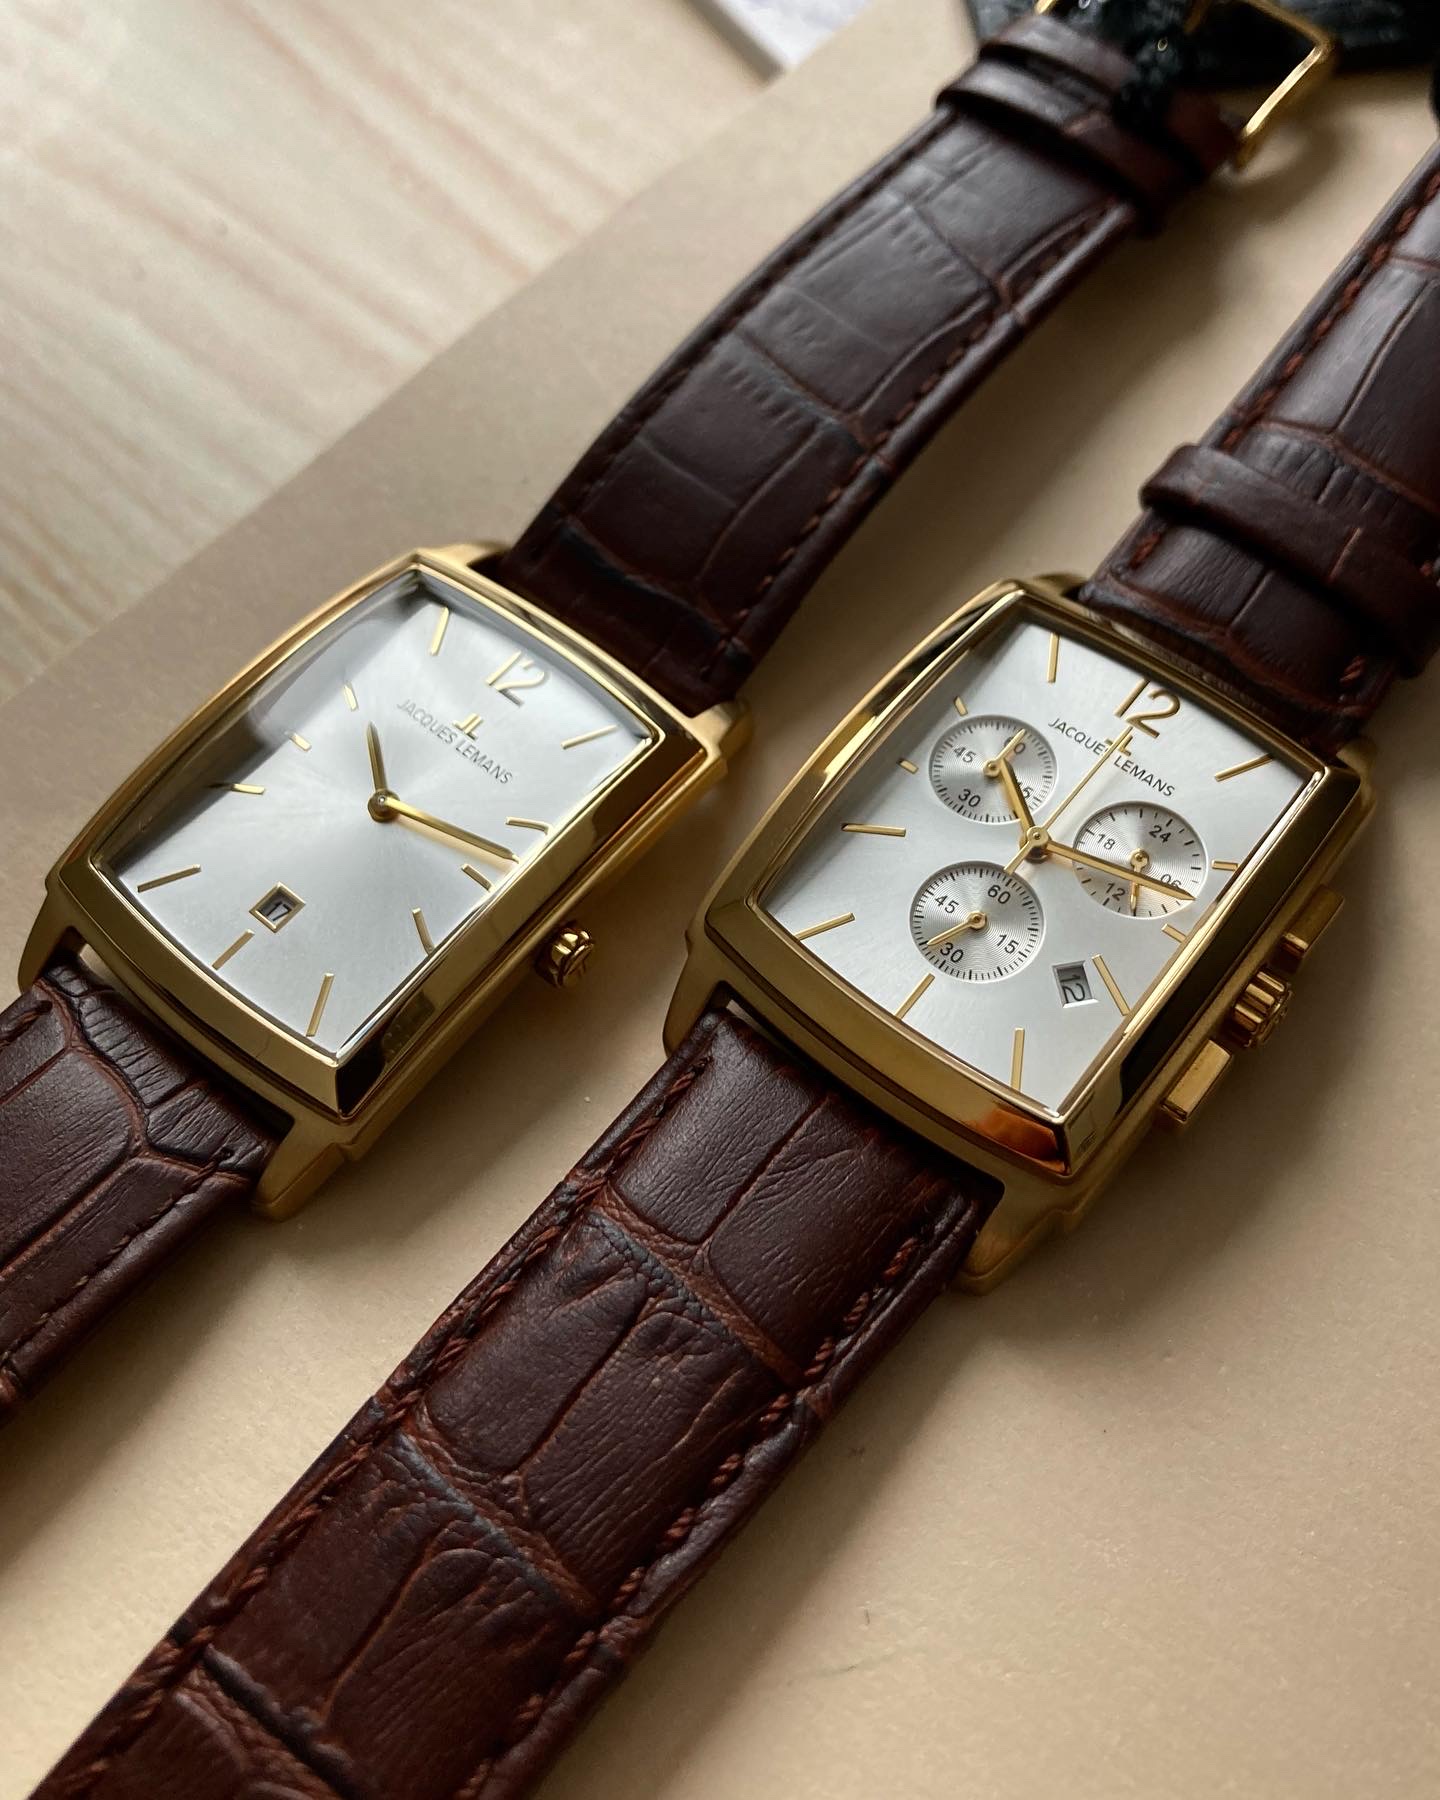 1-1904D, наручные часы Jacques Lemans